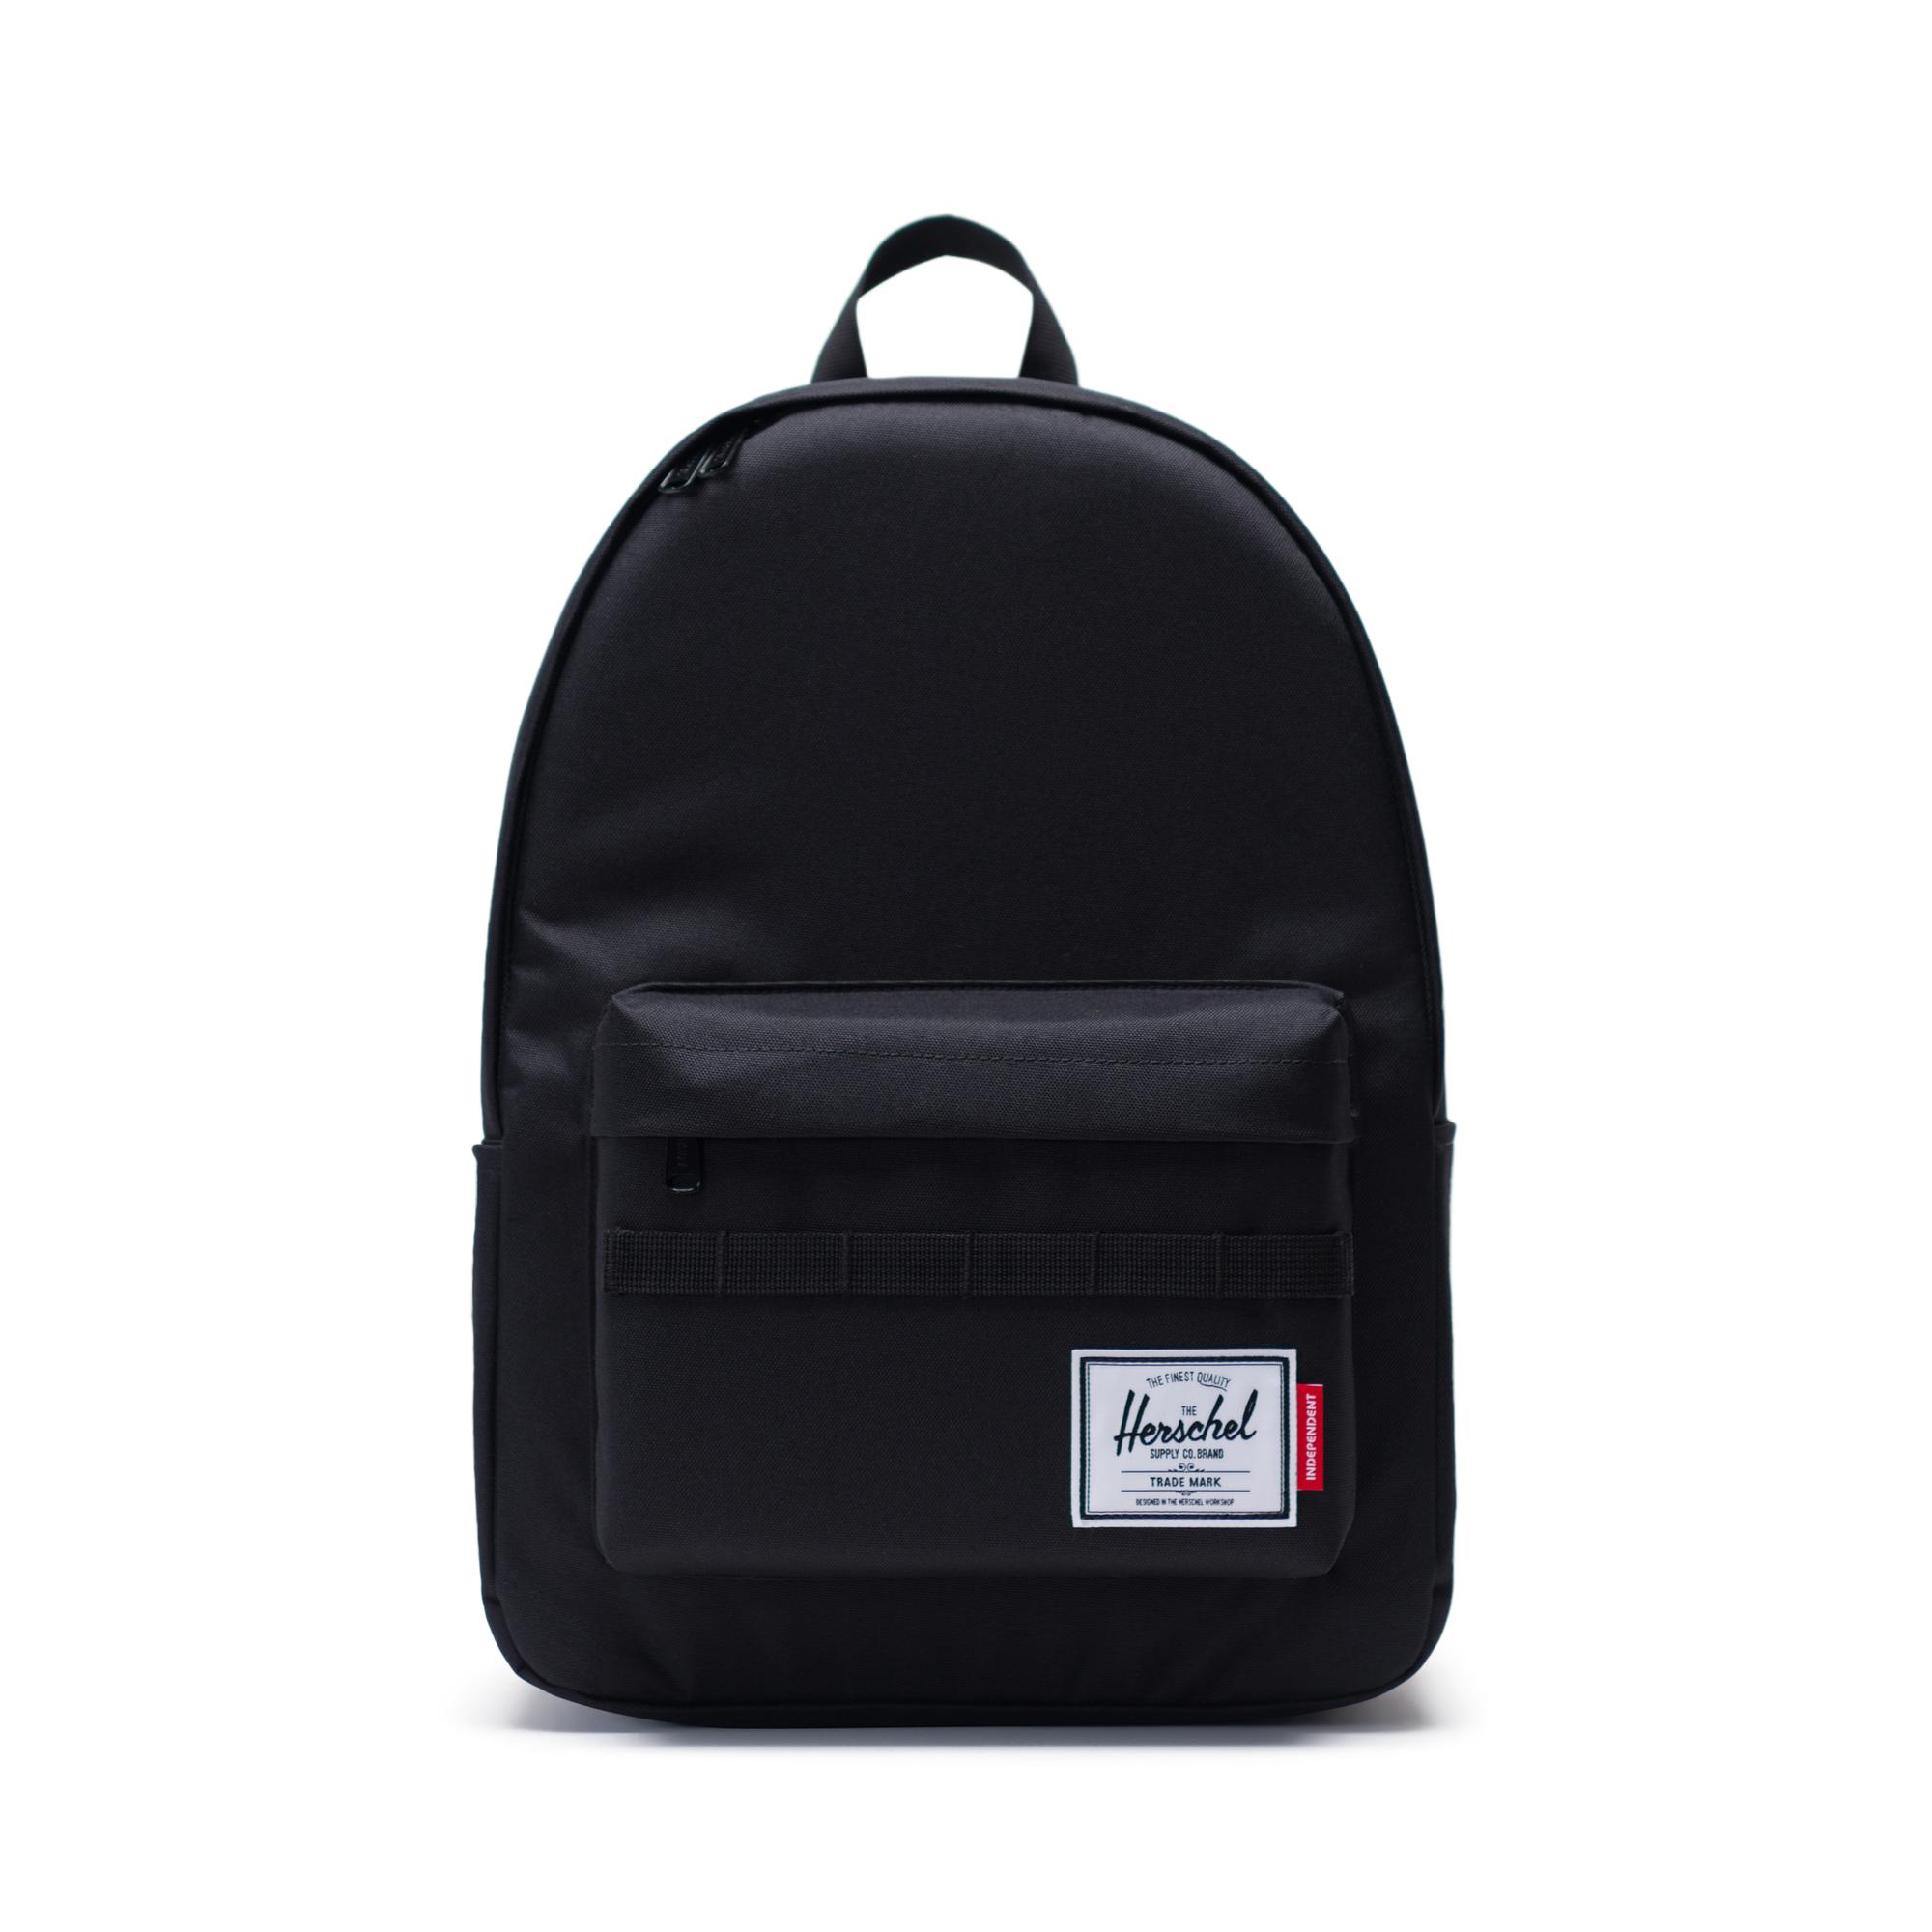 31 Mn Black Label Backpack - Labels Design Ideas 2020